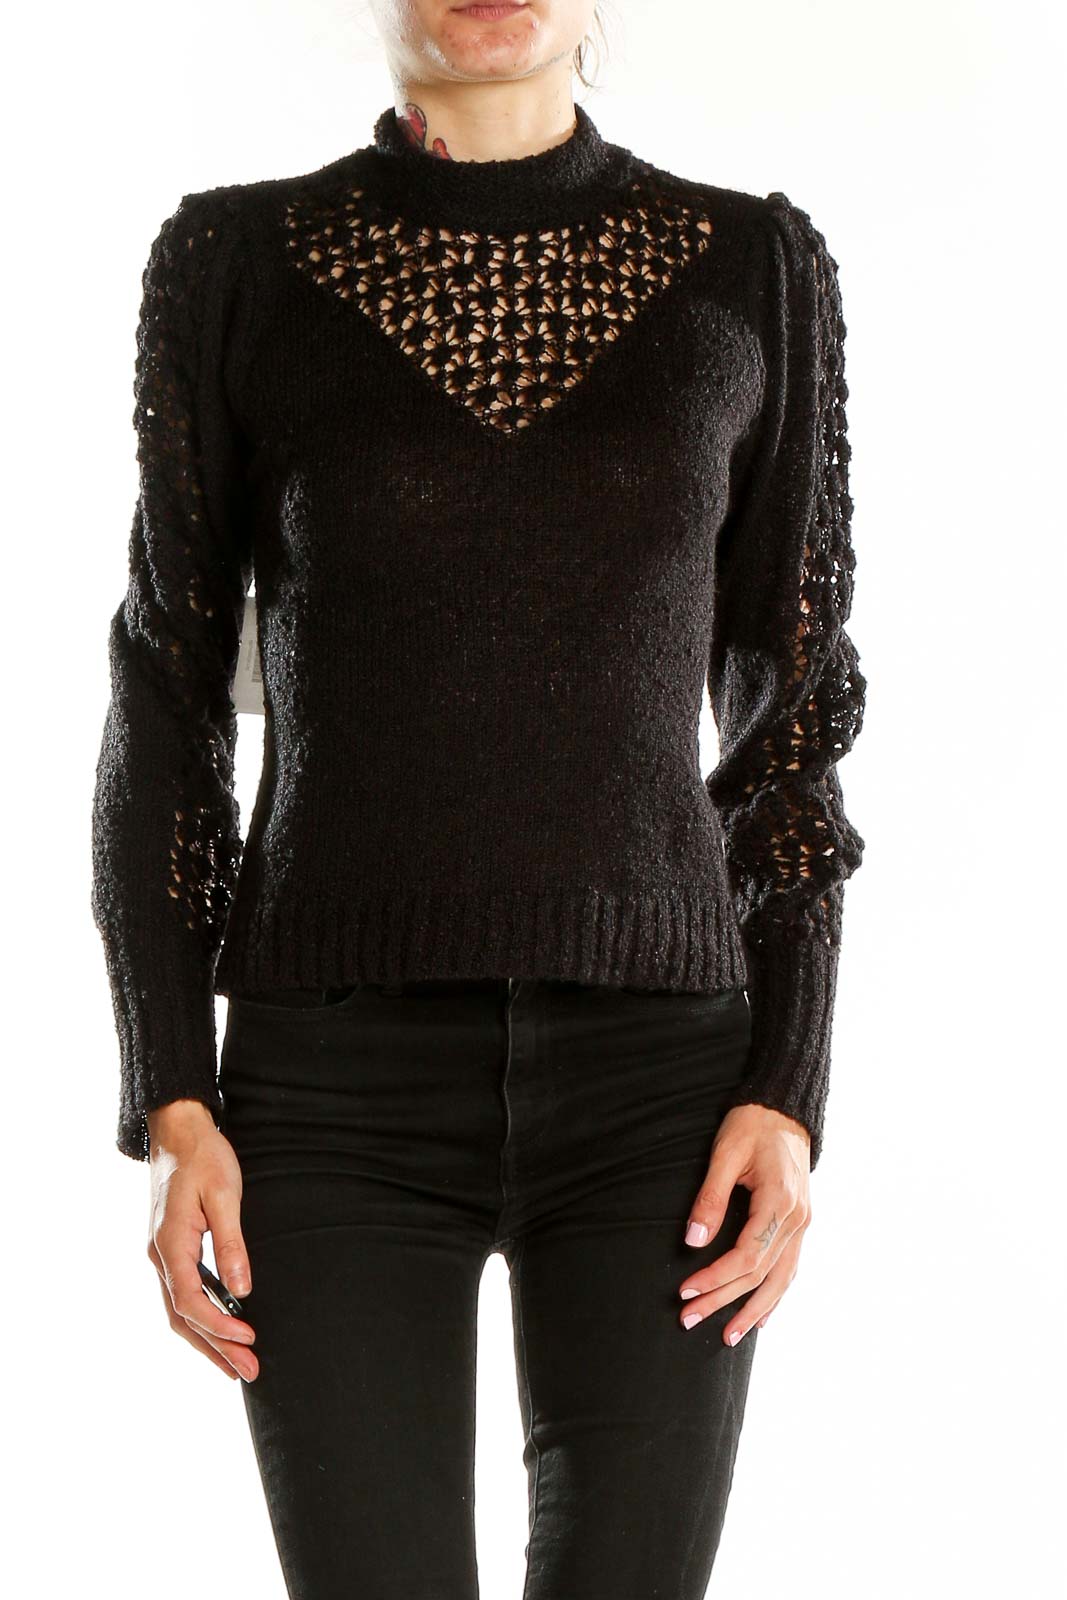 Black Highneck Detailed Sweater Front